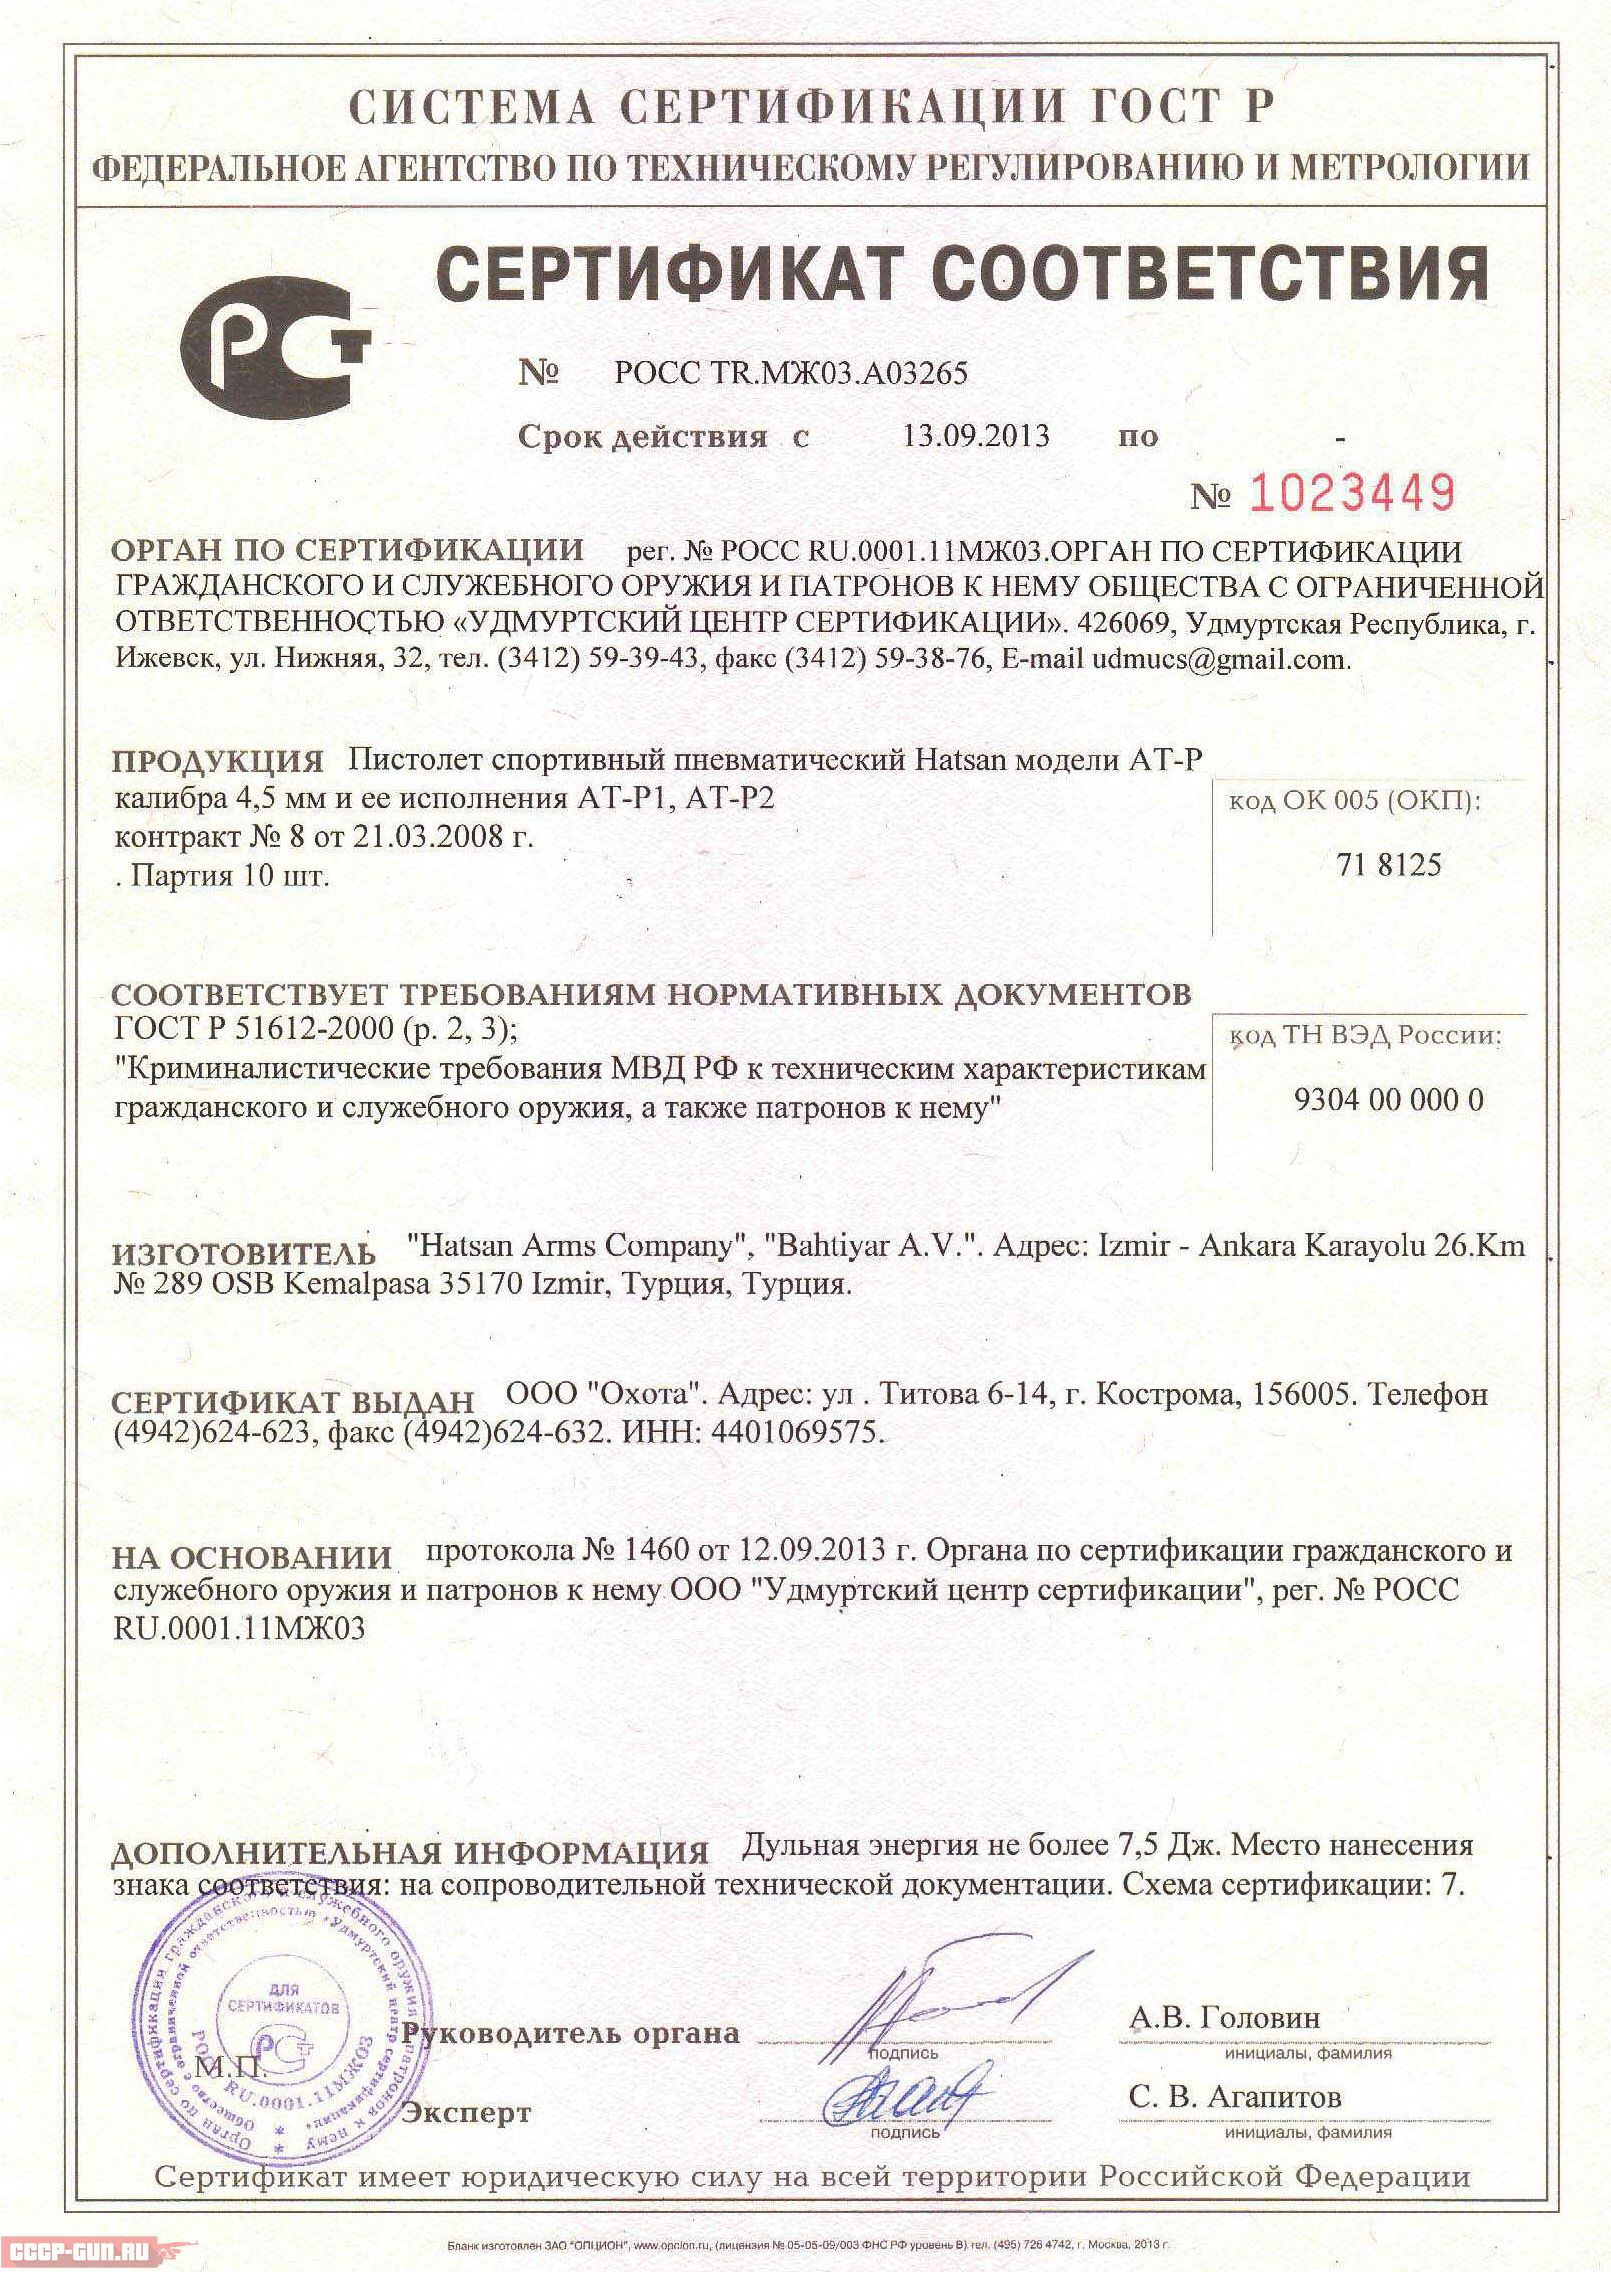 Сертификат на пневматический пистолет Hatsan AT-P1 скачать